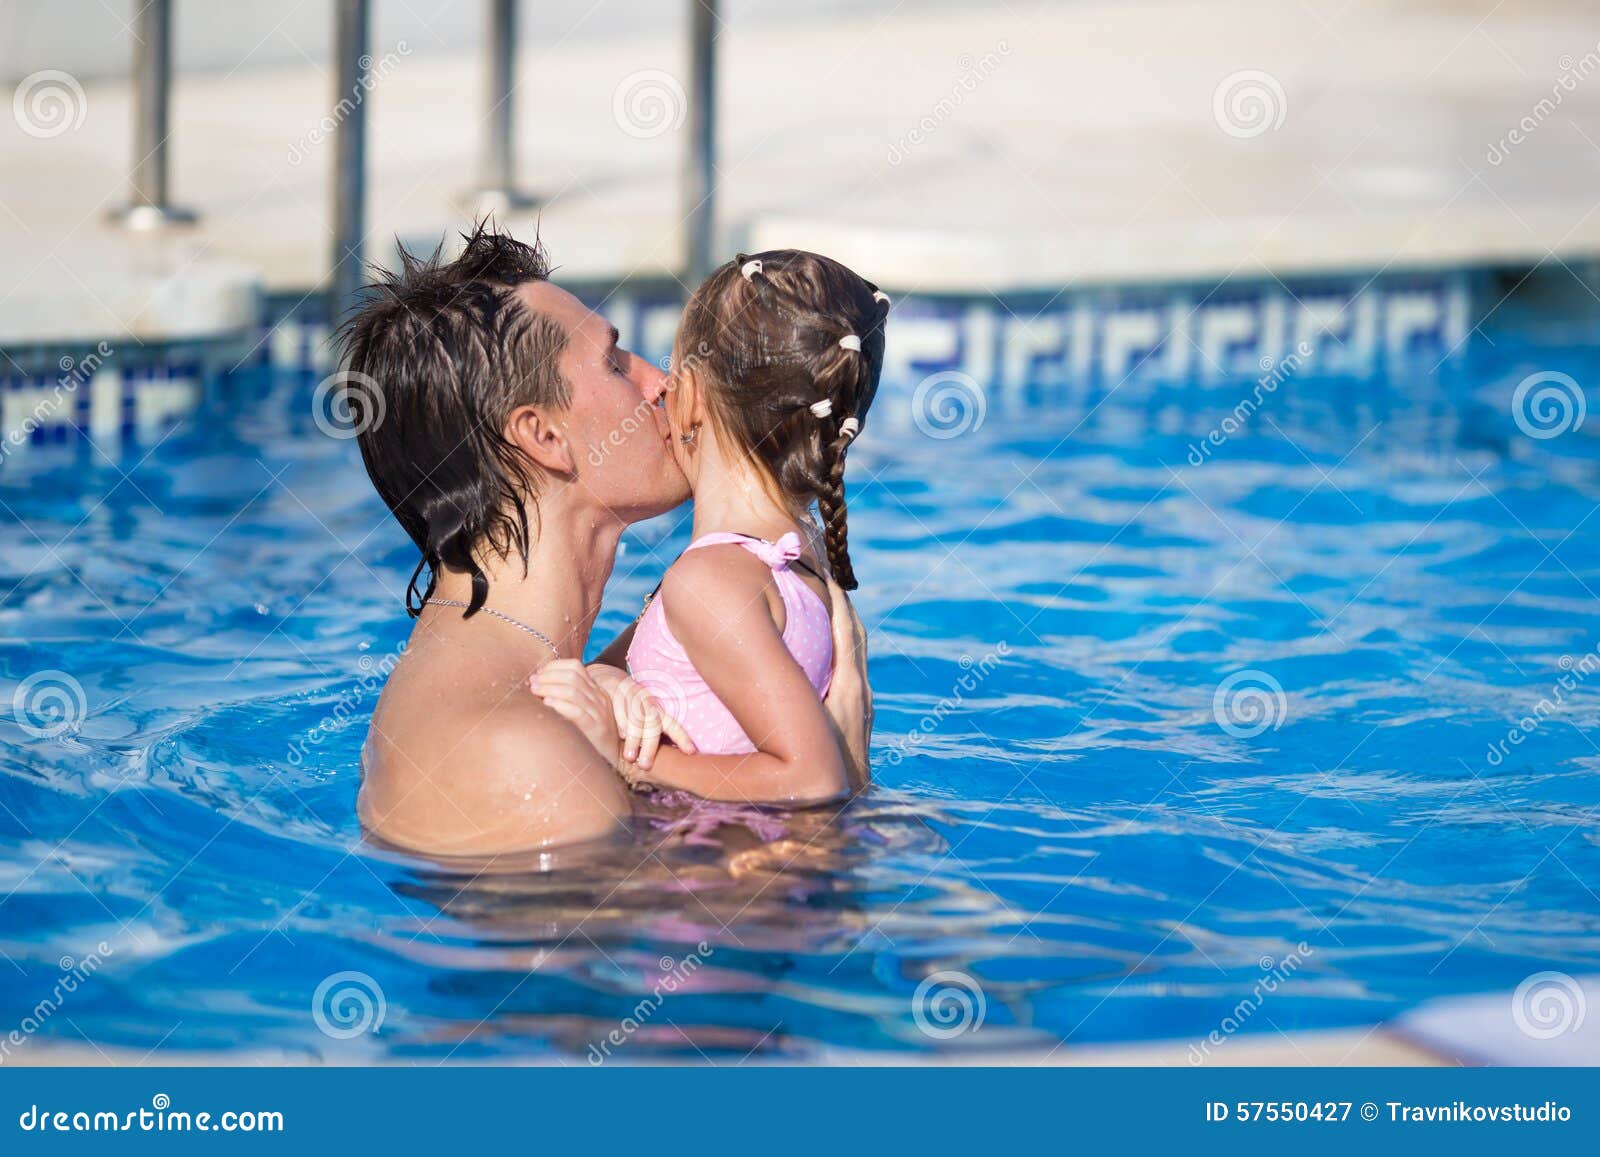 Девушка с дочкой в бассейне. Дочь купается в бассейне. Девочки с папами в бассейне. Отец с дочкой в бассейне. Папа купает дочку